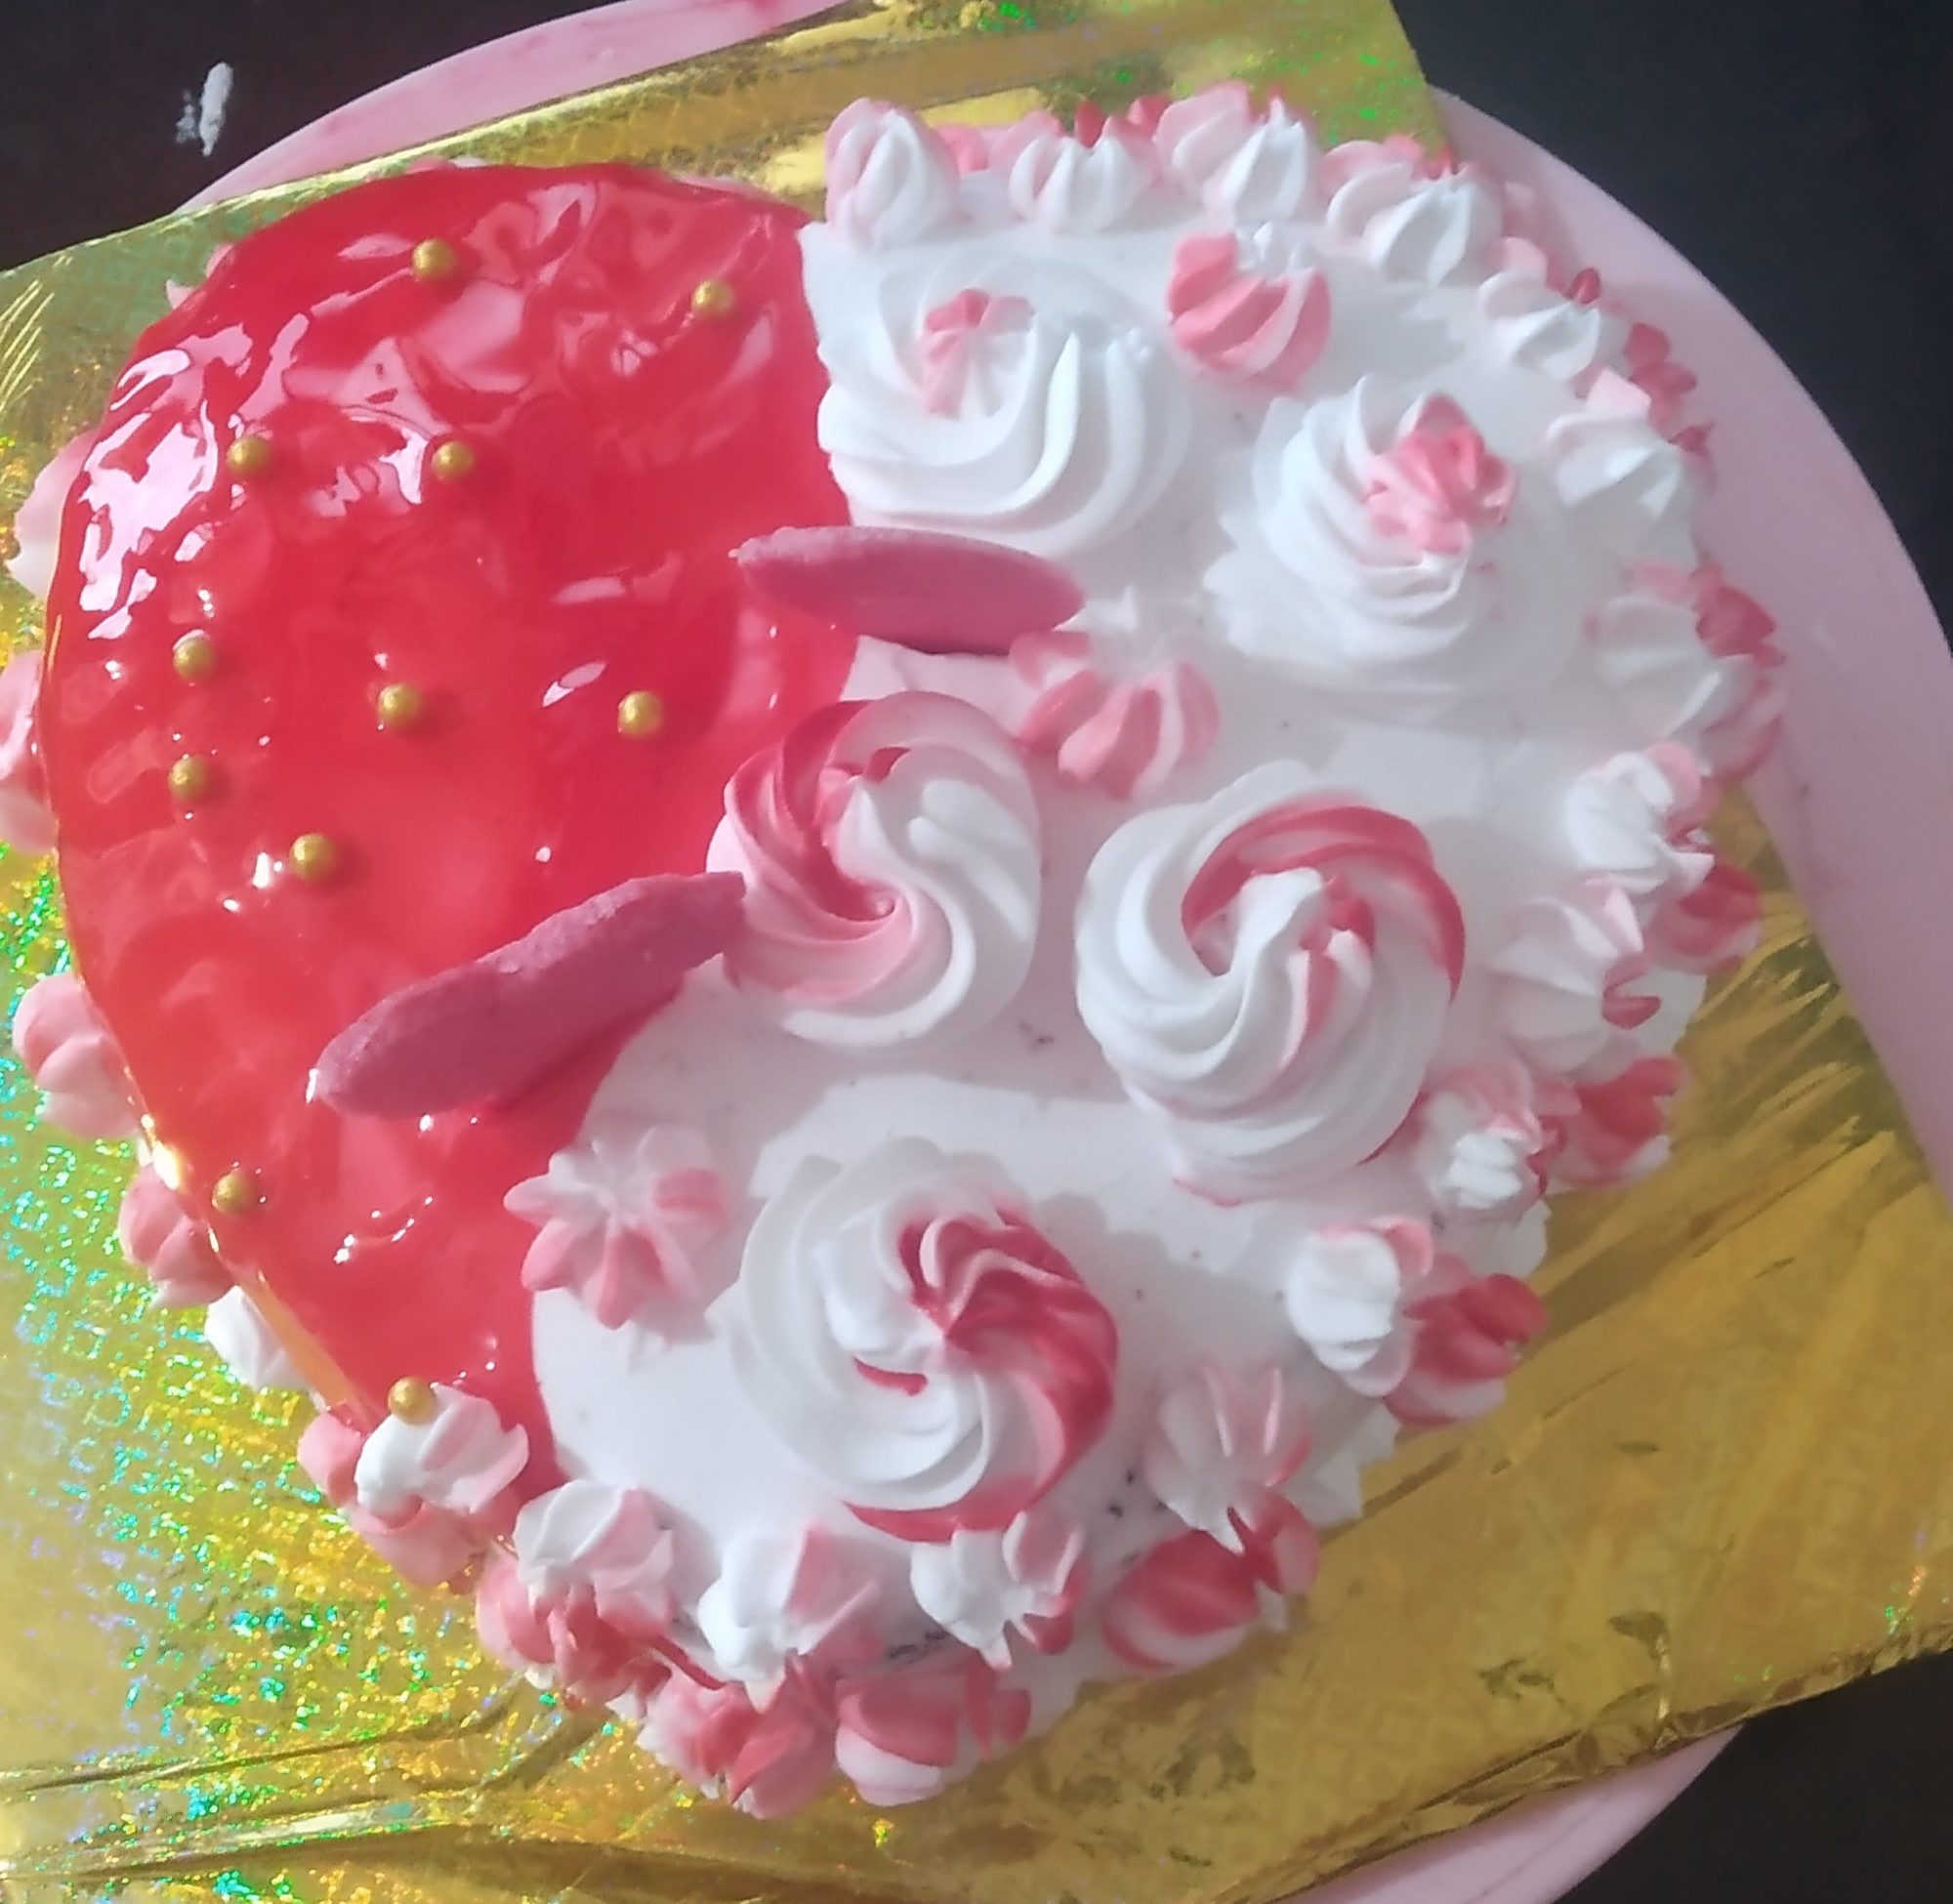 Red Velvet Cake Designs, Images, Price Near Me